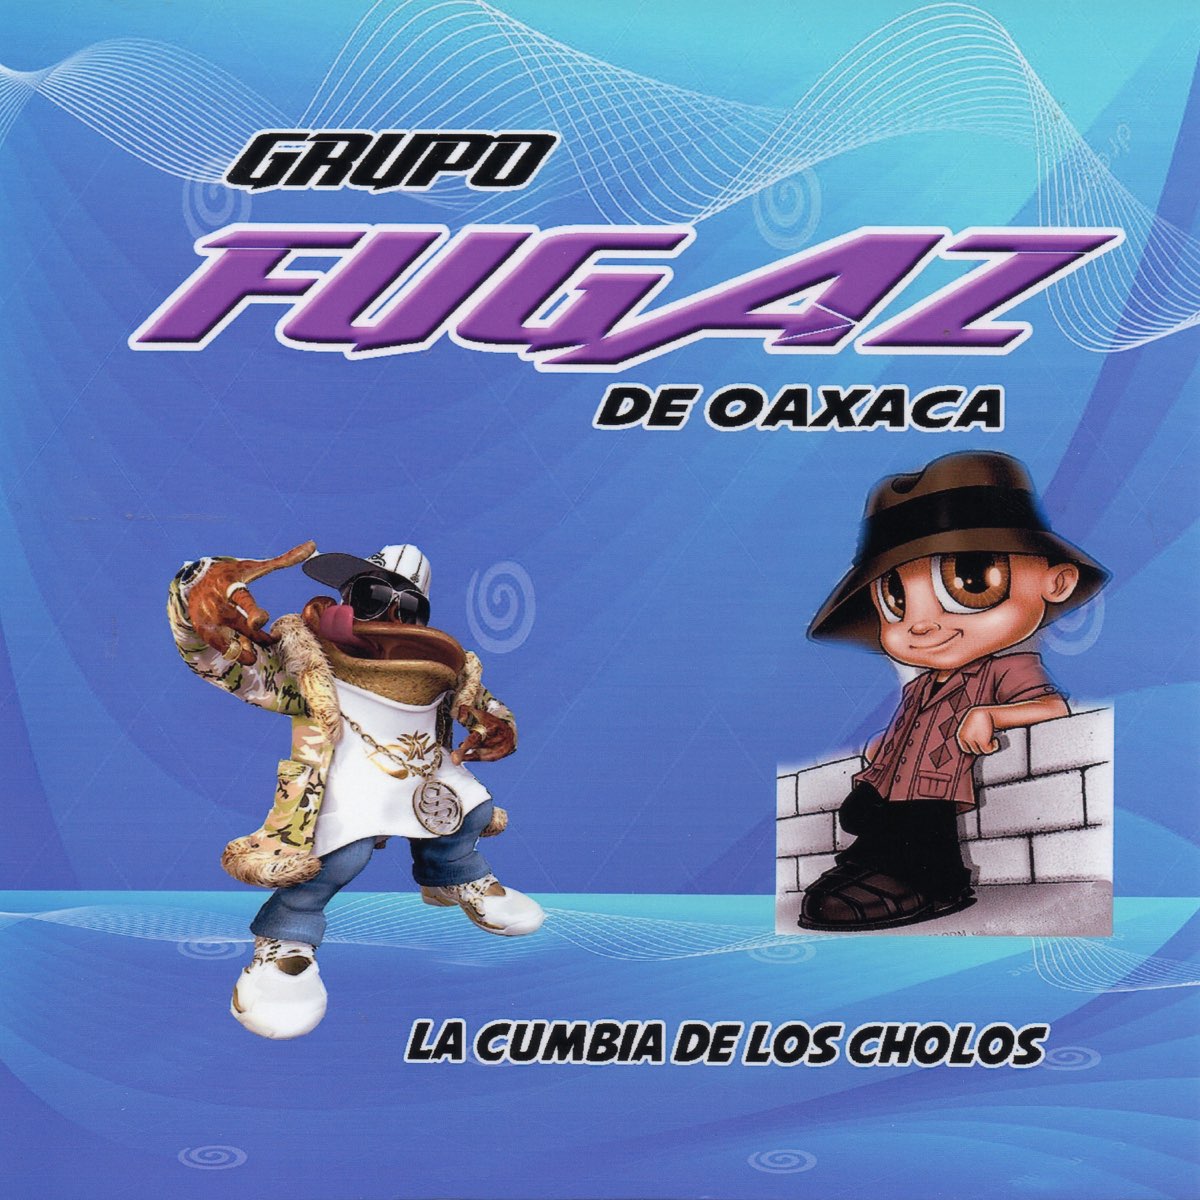 La Cumbia De Los Cholos by Grupo Fugaz De Oaxaca on Apple Music